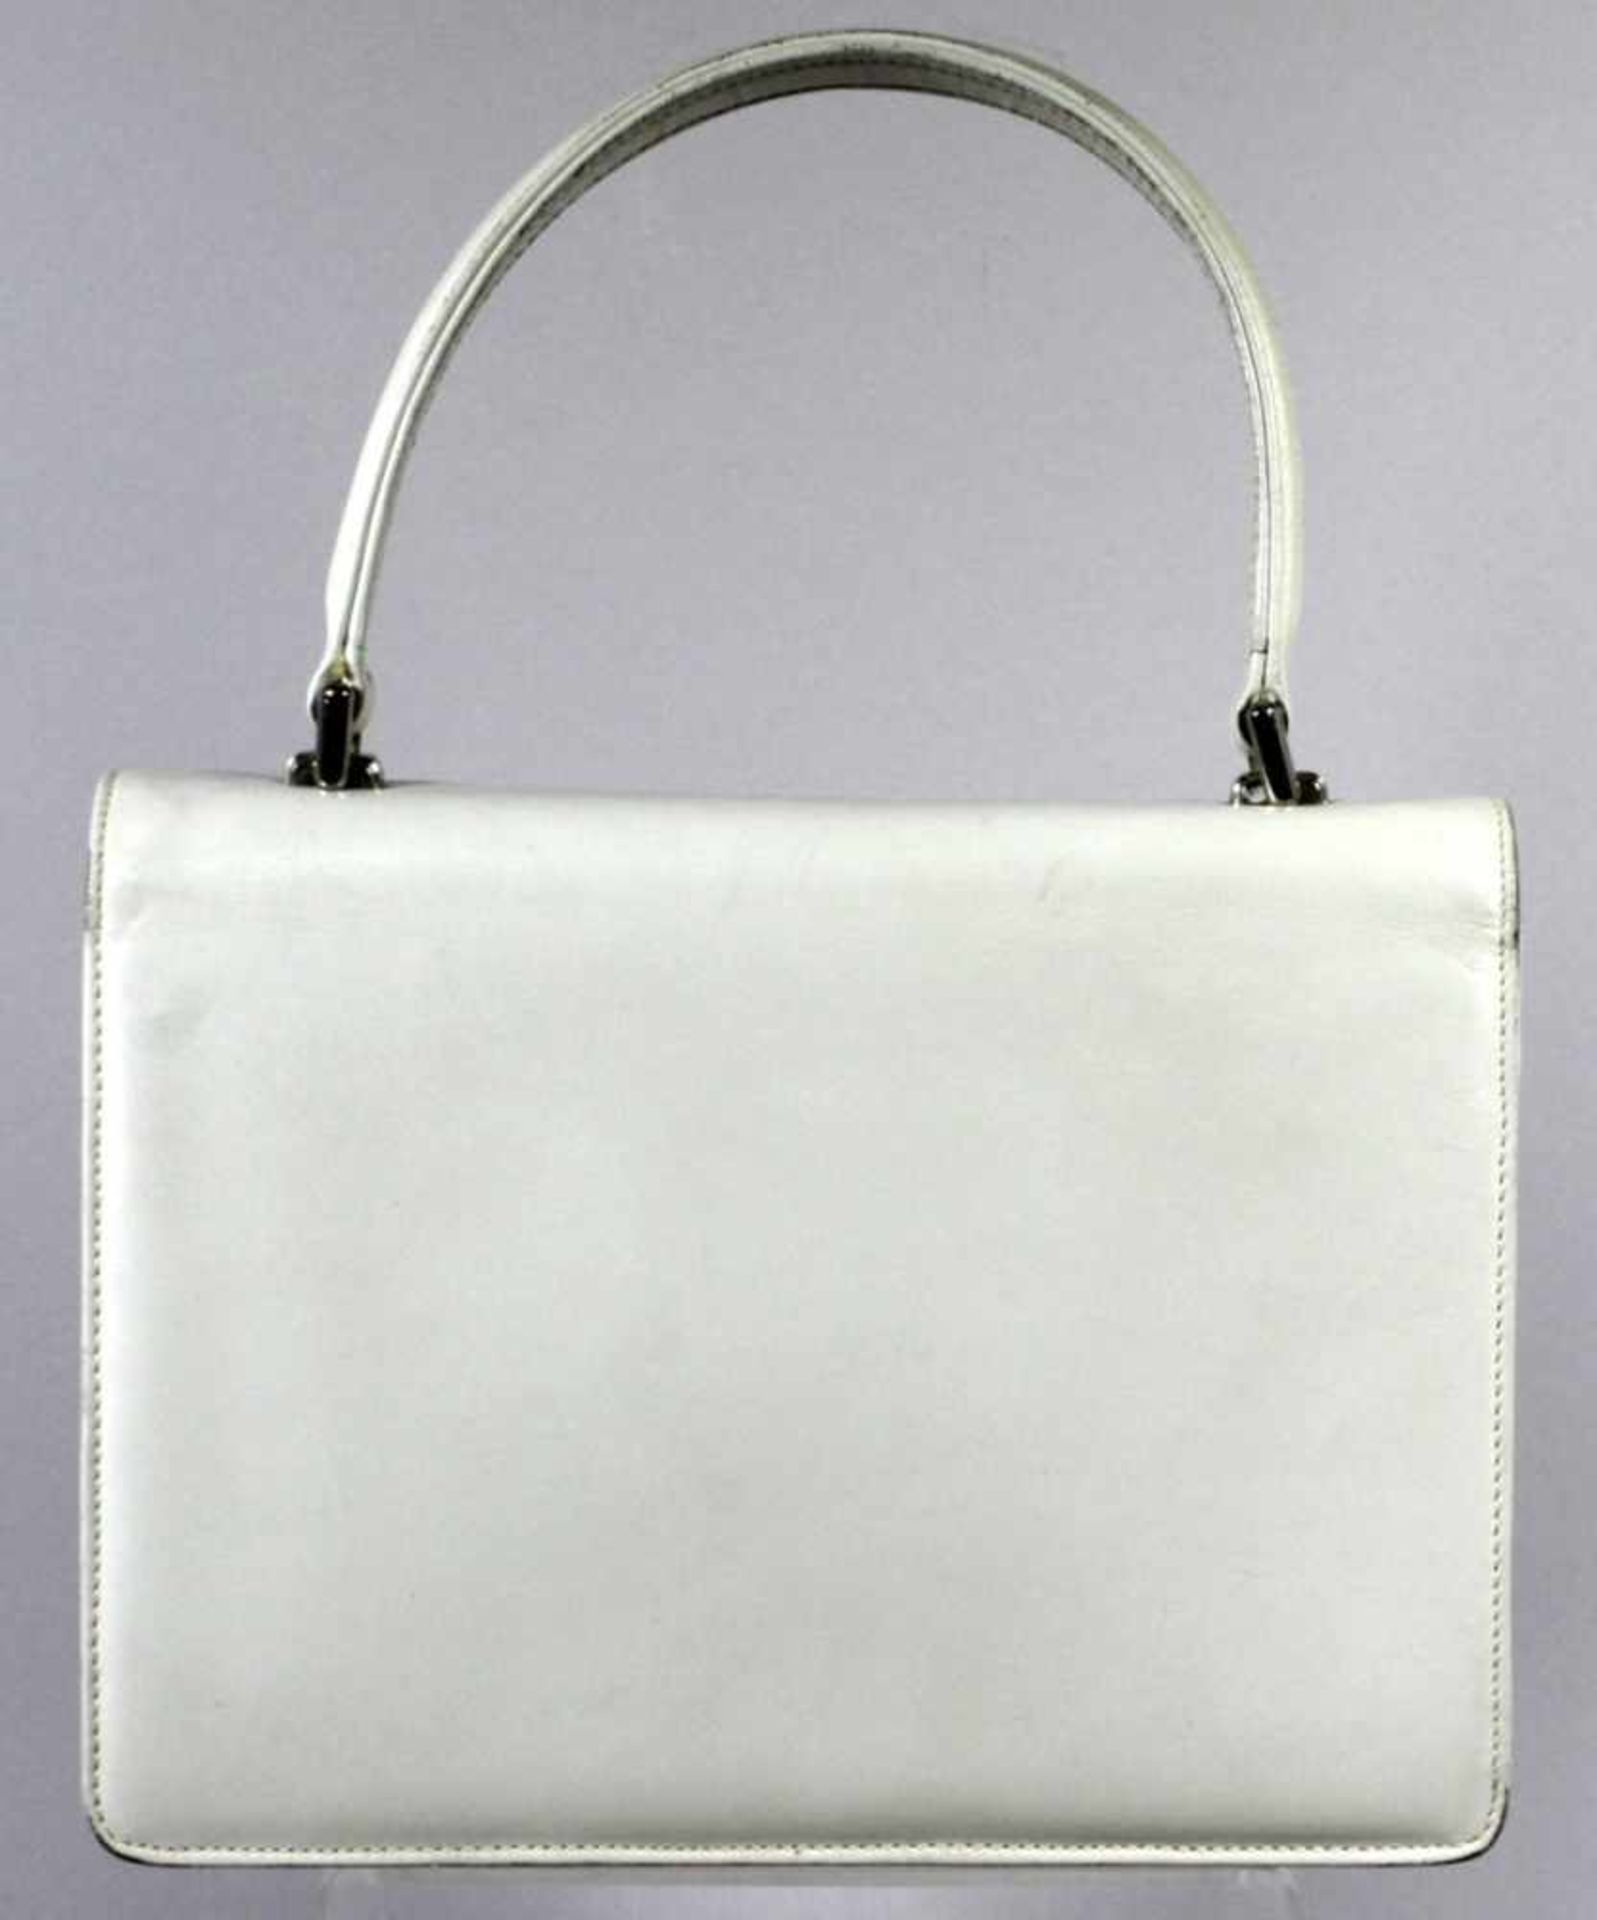 Damen-Handtasche, Italien, 2. Hälfte 20. Jh., querechteckige Form mit Frontlasche ausweißem Leder, - Bild 3 aus 3